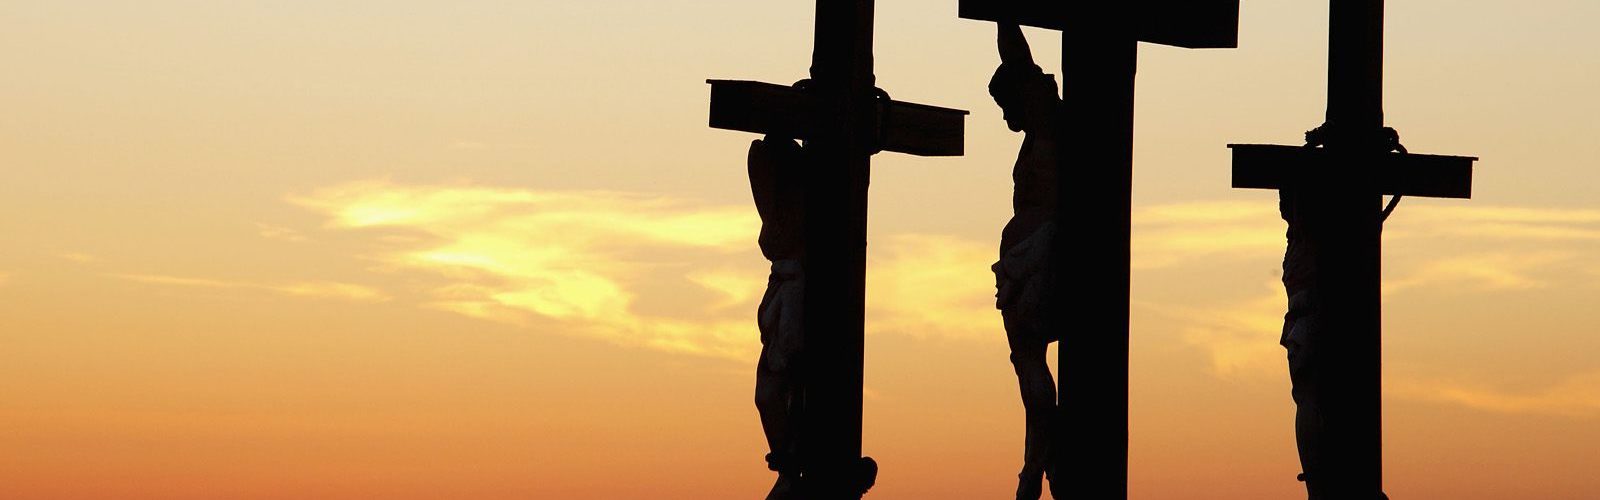 Why did Jesus Die on the Cross?